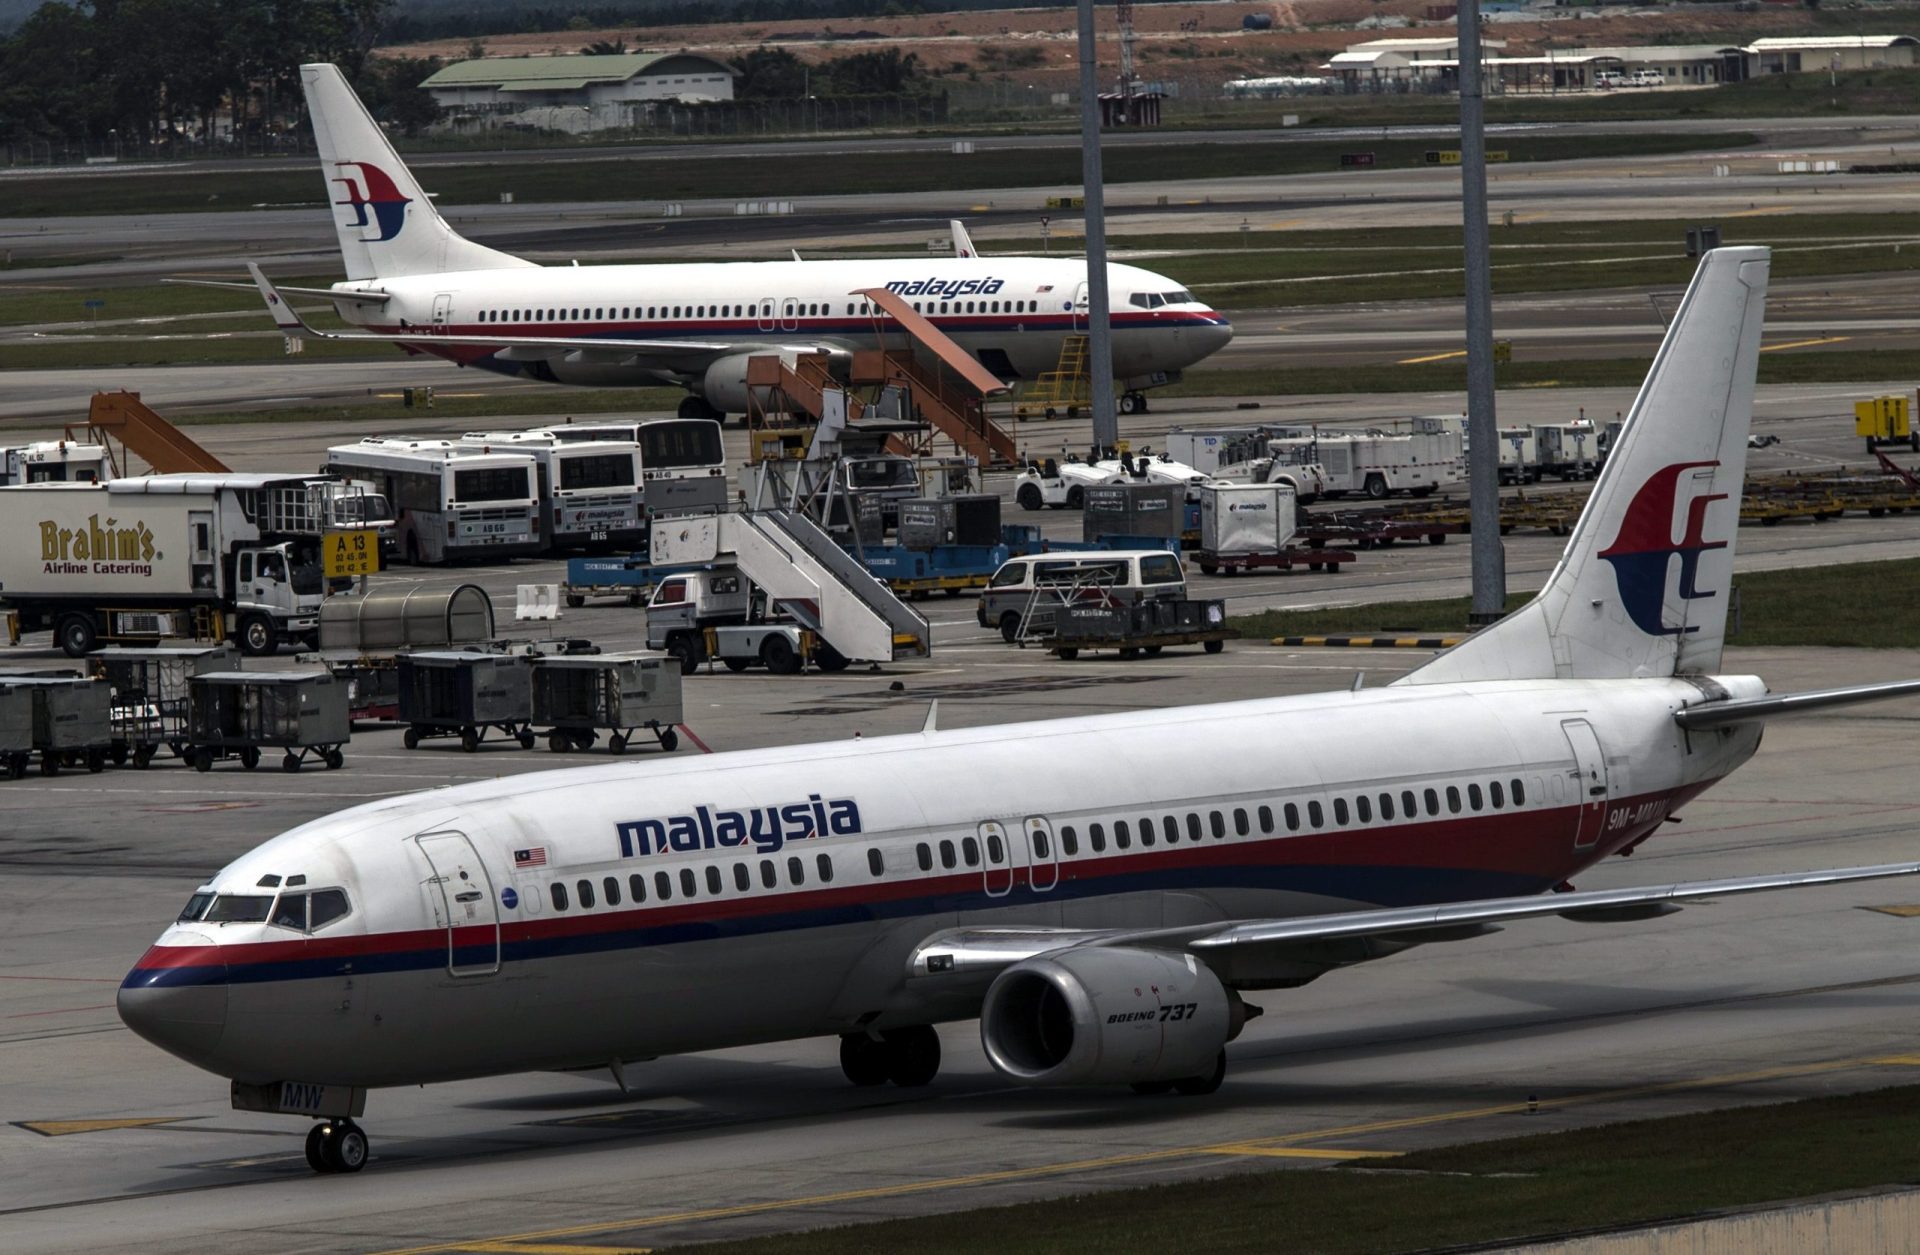 Busca de avião malaio desaparecido centrada em 58 pontos do Índico